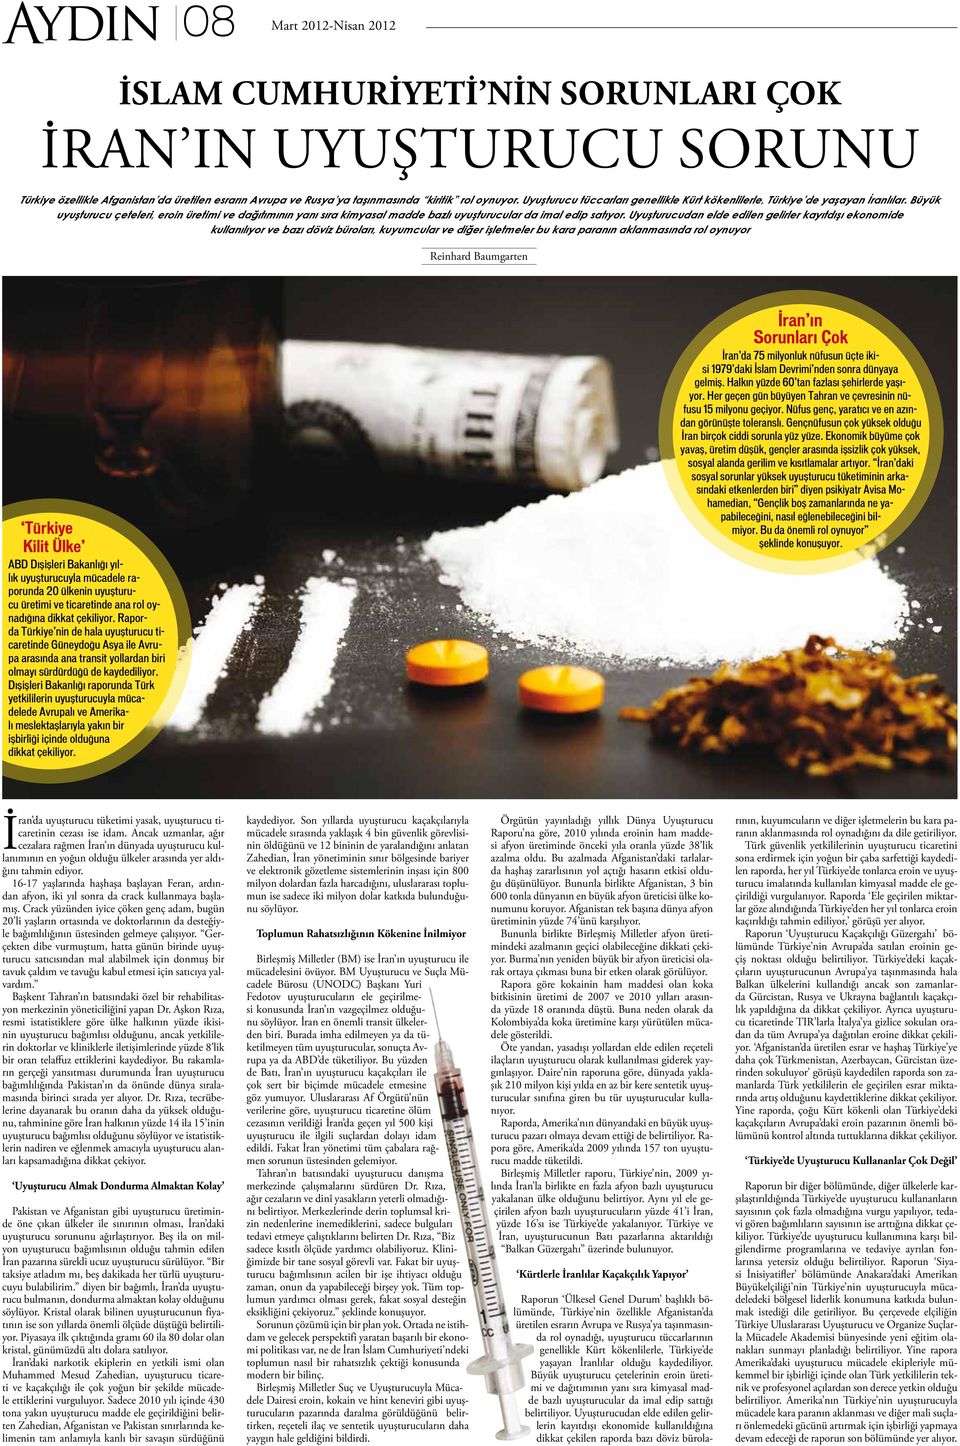 Büyük uyuşturucu çeteleri, eroin üretimi ve dağıtımının yanı sıra kimyasal madde bazlı uyuşturucular da imal edip satıyor.